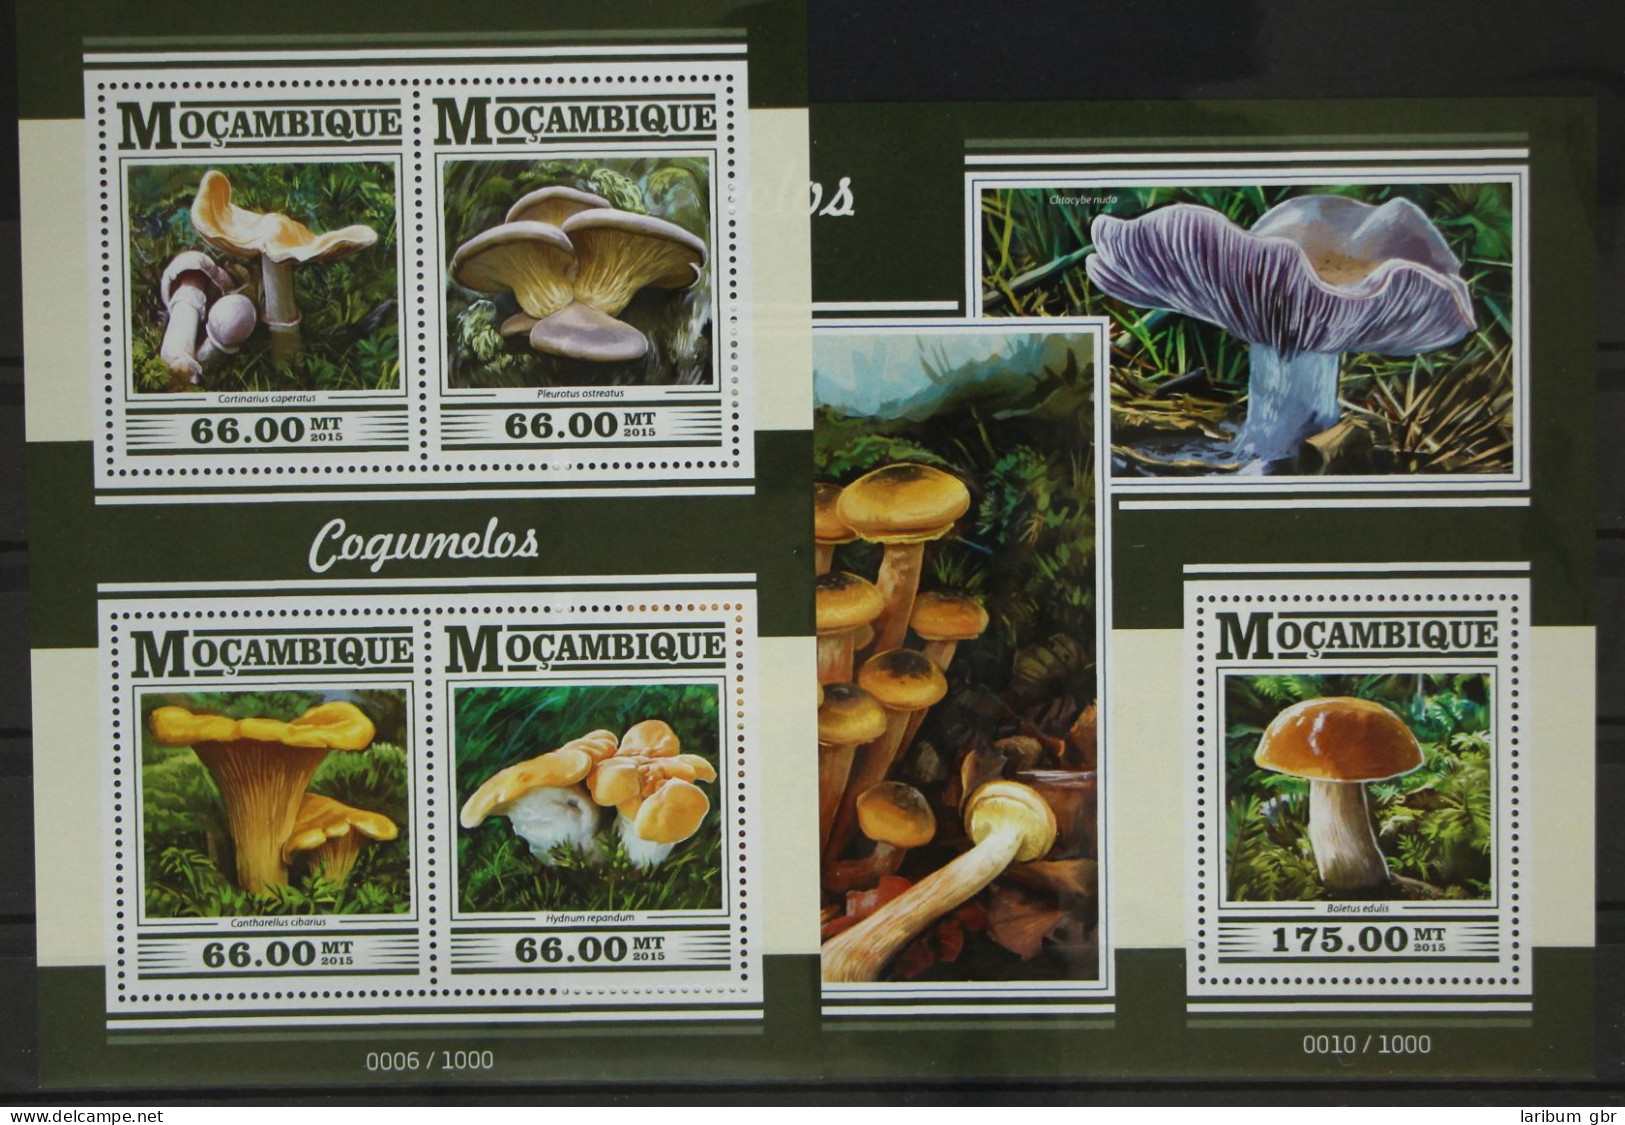 Mosambik 7989-7992 Und Block 1038 Postfrisch Kleinbogen / Pilze #GG171 - Mozambique